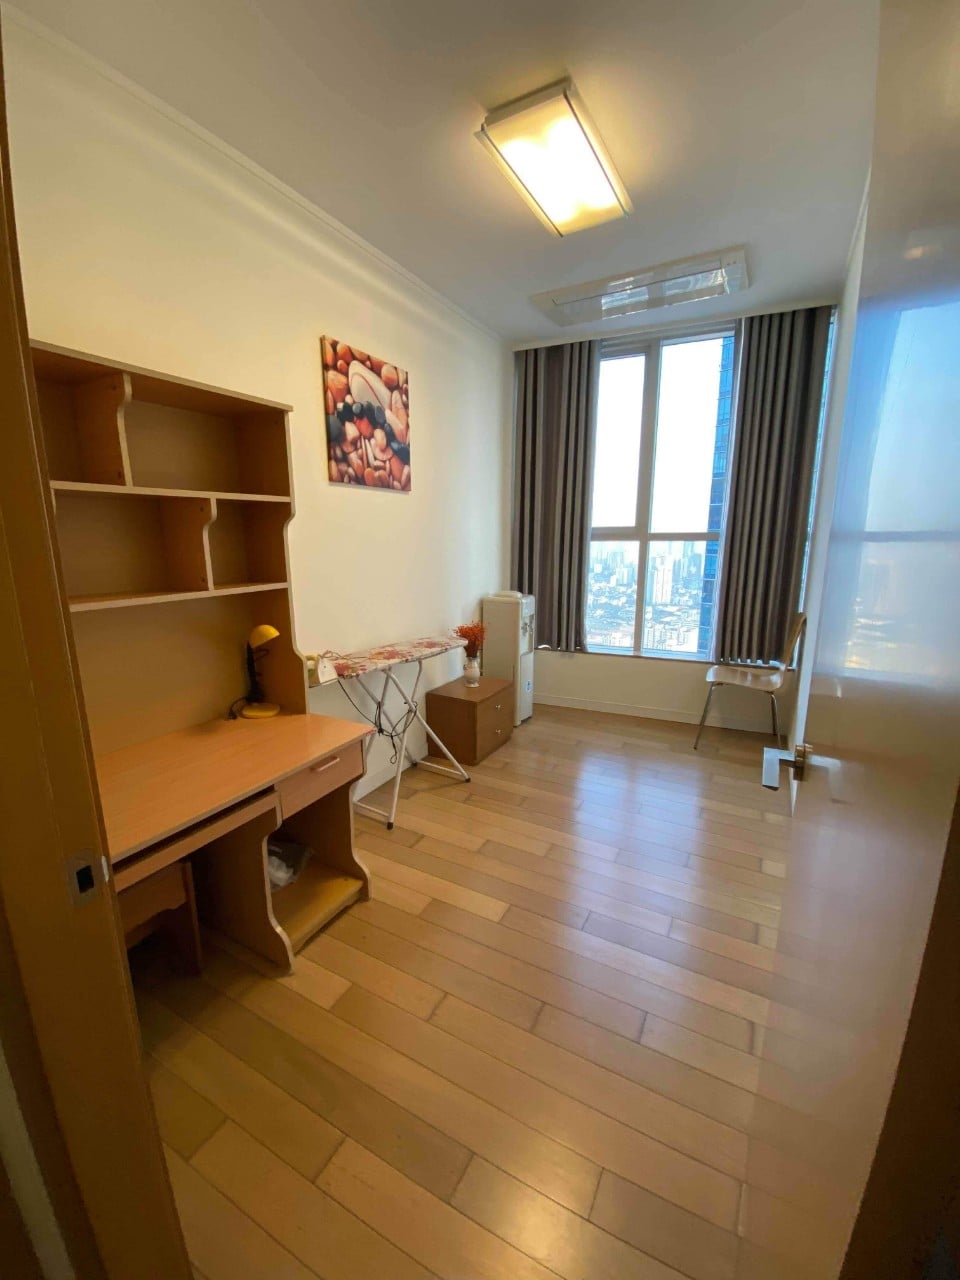 Cho thuê căn hộ 3 phòng ngủ chung cư Keangnam full nội thất cao cấp, vào ở được ngay (ảnh thật) 999418